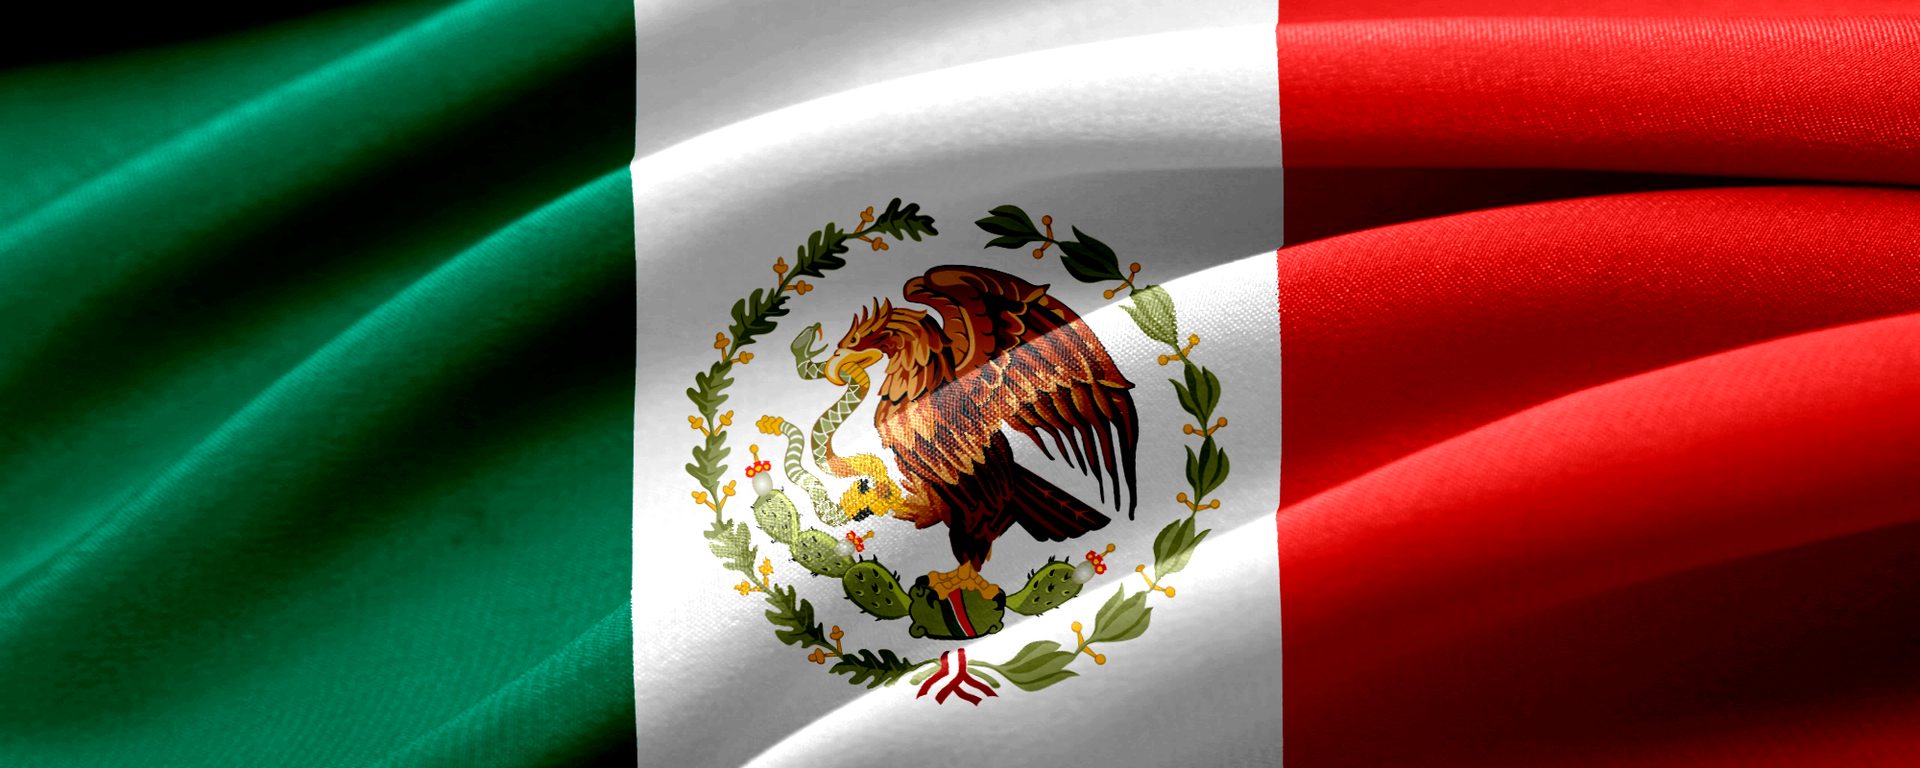 Bandera de México - Sputnik Mundo, 1920, 18.09.2020